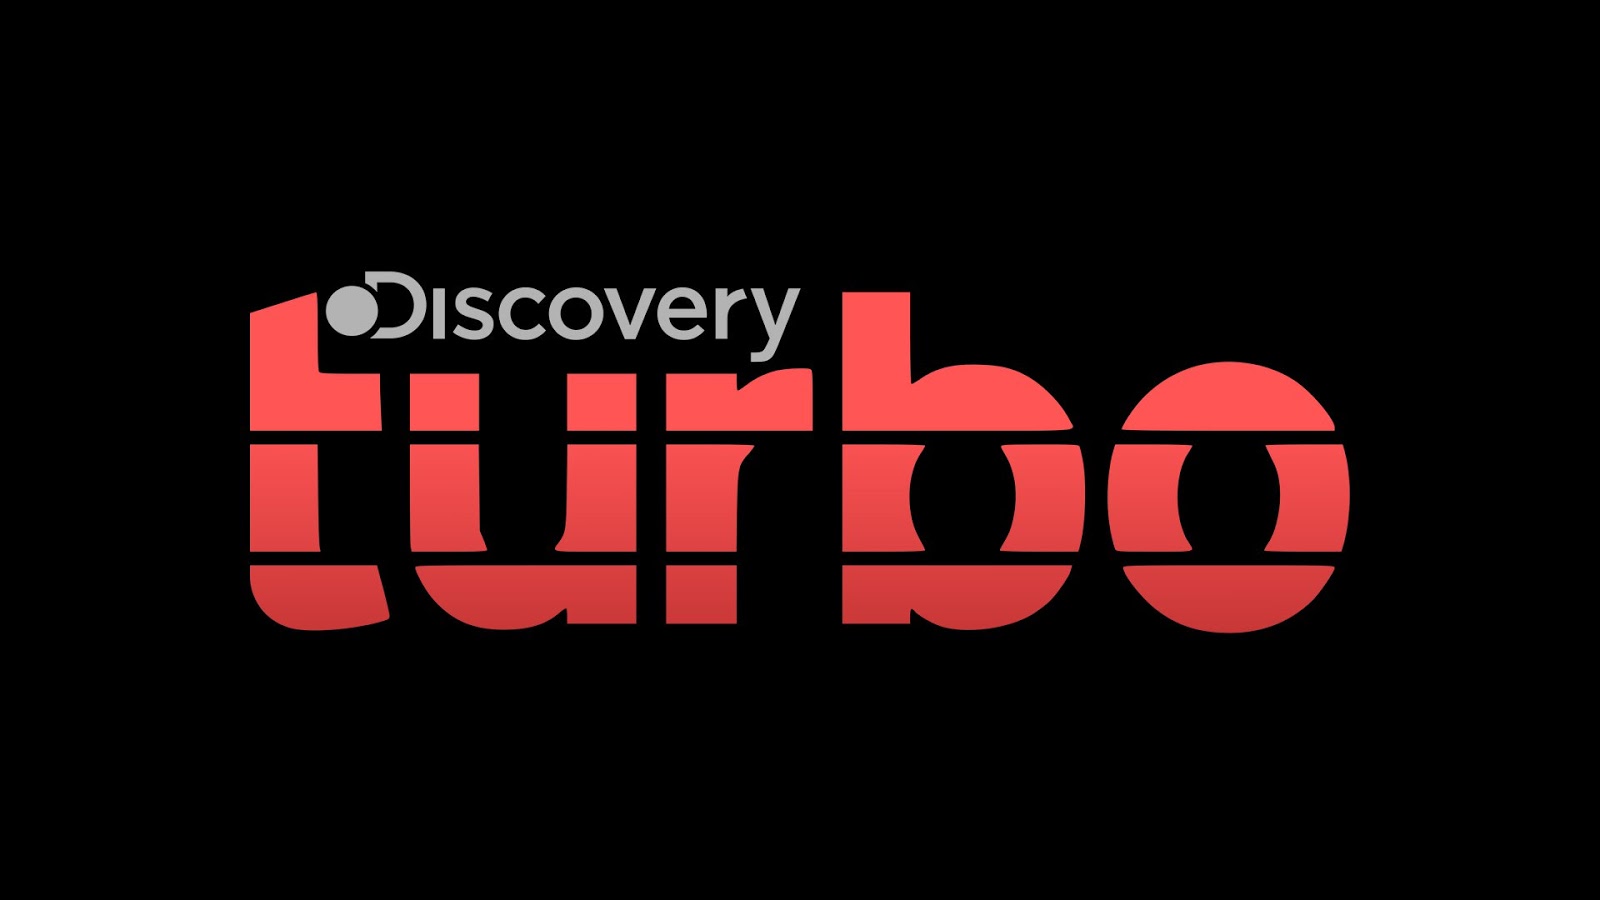 Discovery tool. Discovery Turbo. Turbo логотип. Дискавери Екатеринбург. Discovery shop надпись.